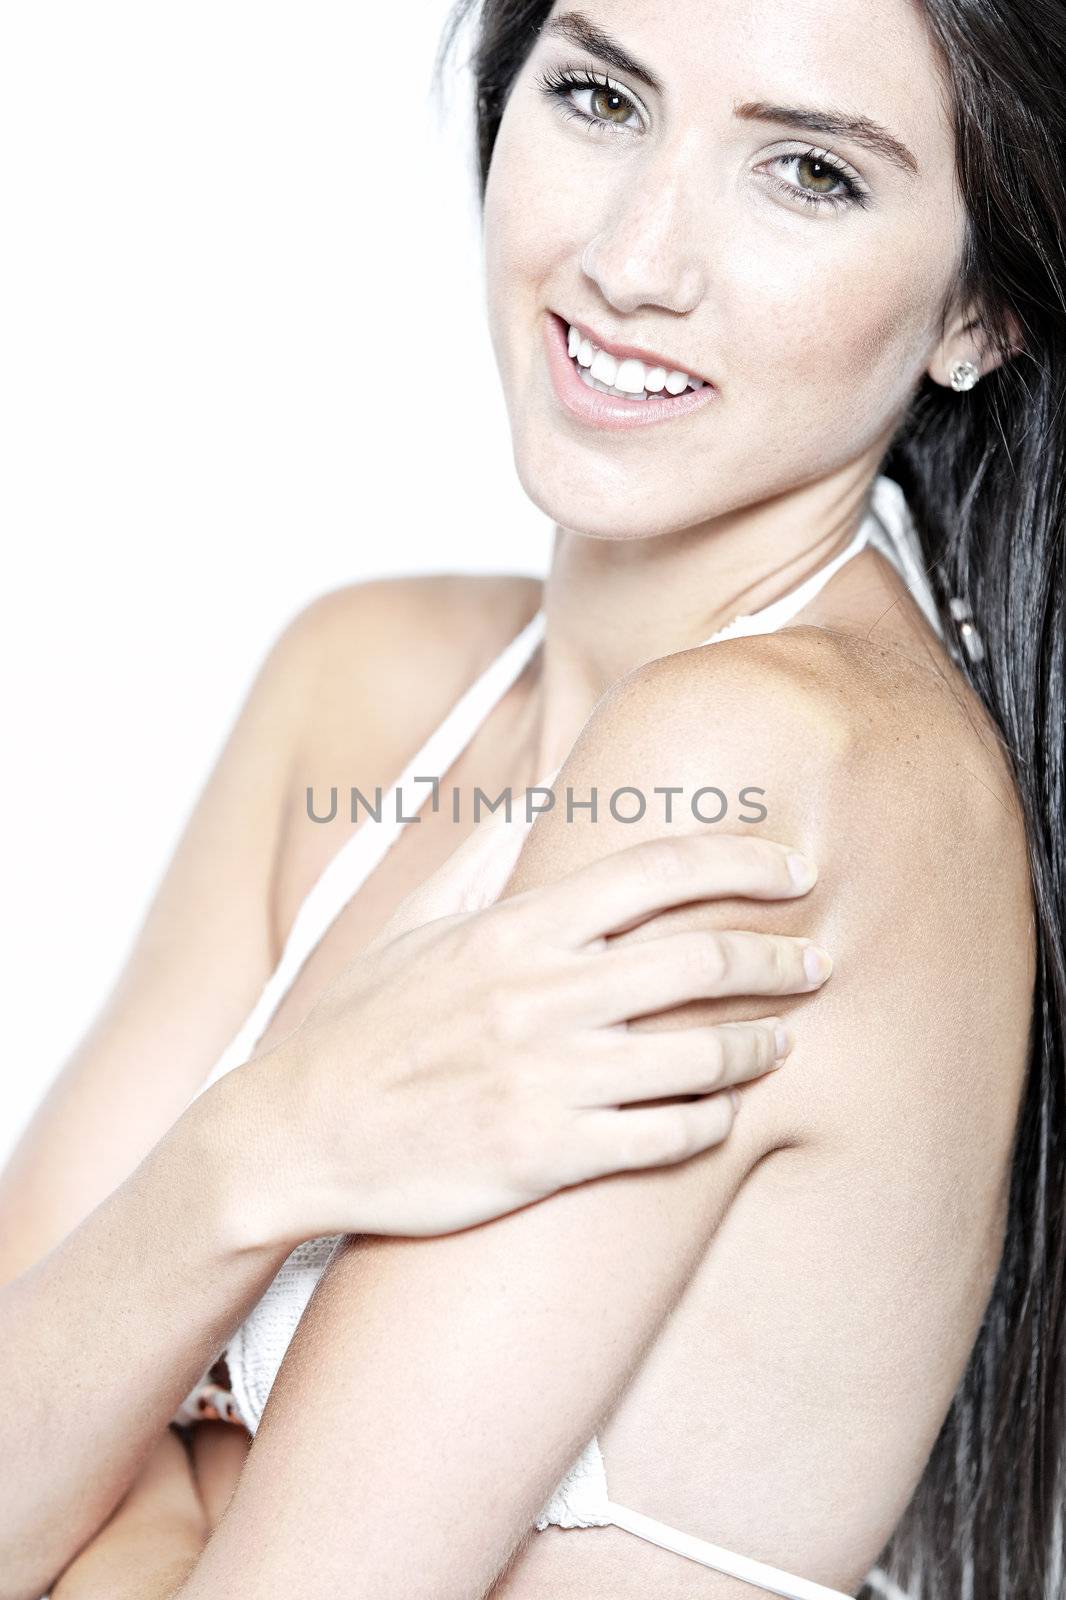 Beautiful sexy woman in white bikini smiling and cheerful